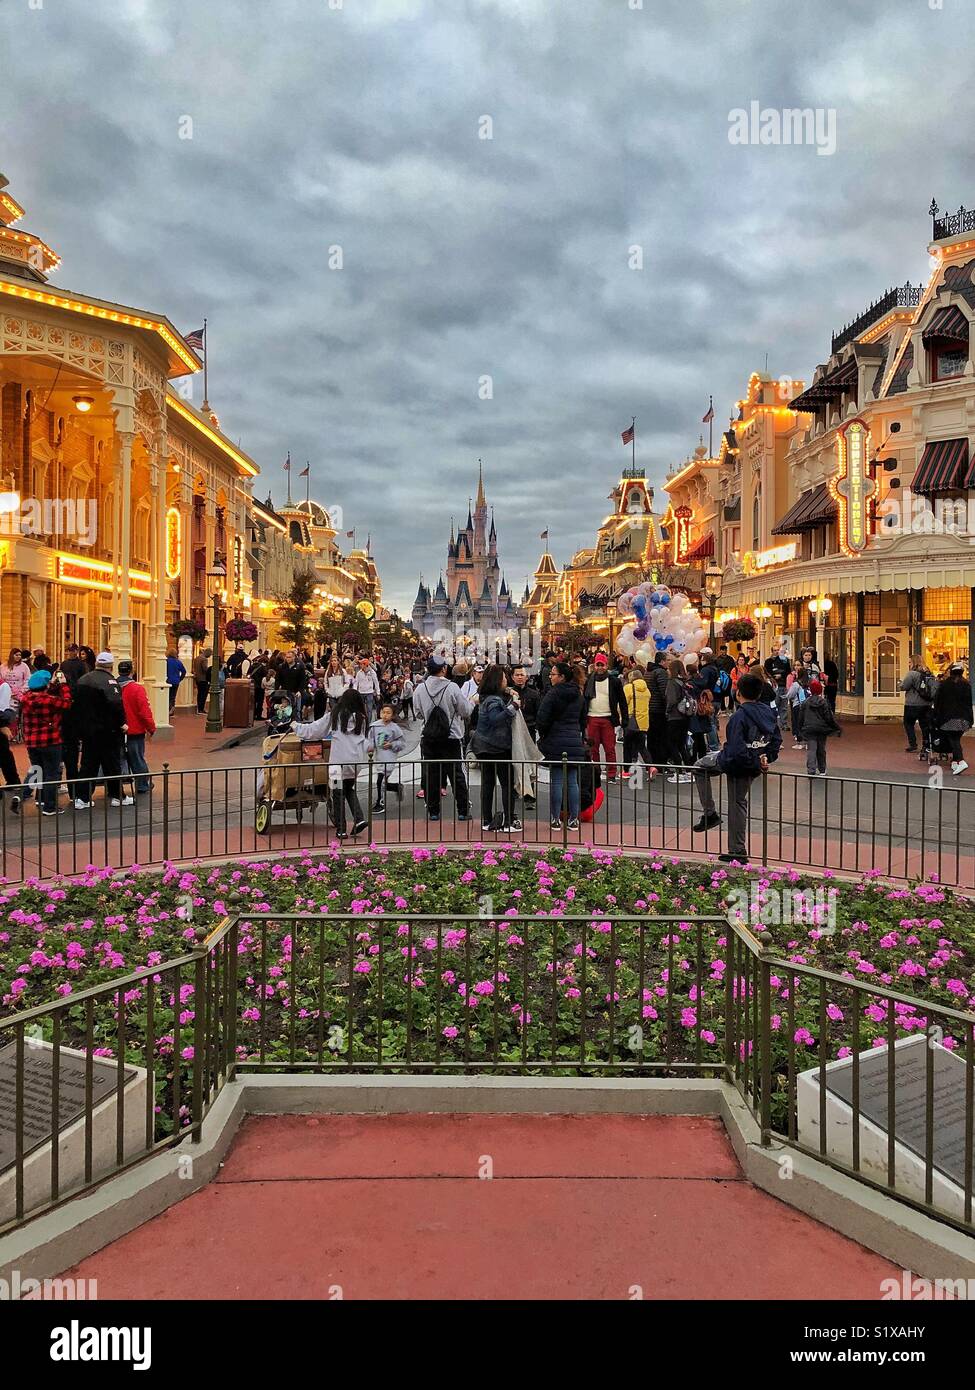 Disneyworld, Disney's Magic Kingdom. Vue en soirée sur la rue principale de Cinderella's Castle. Orlando (Floride). Banque D'Images